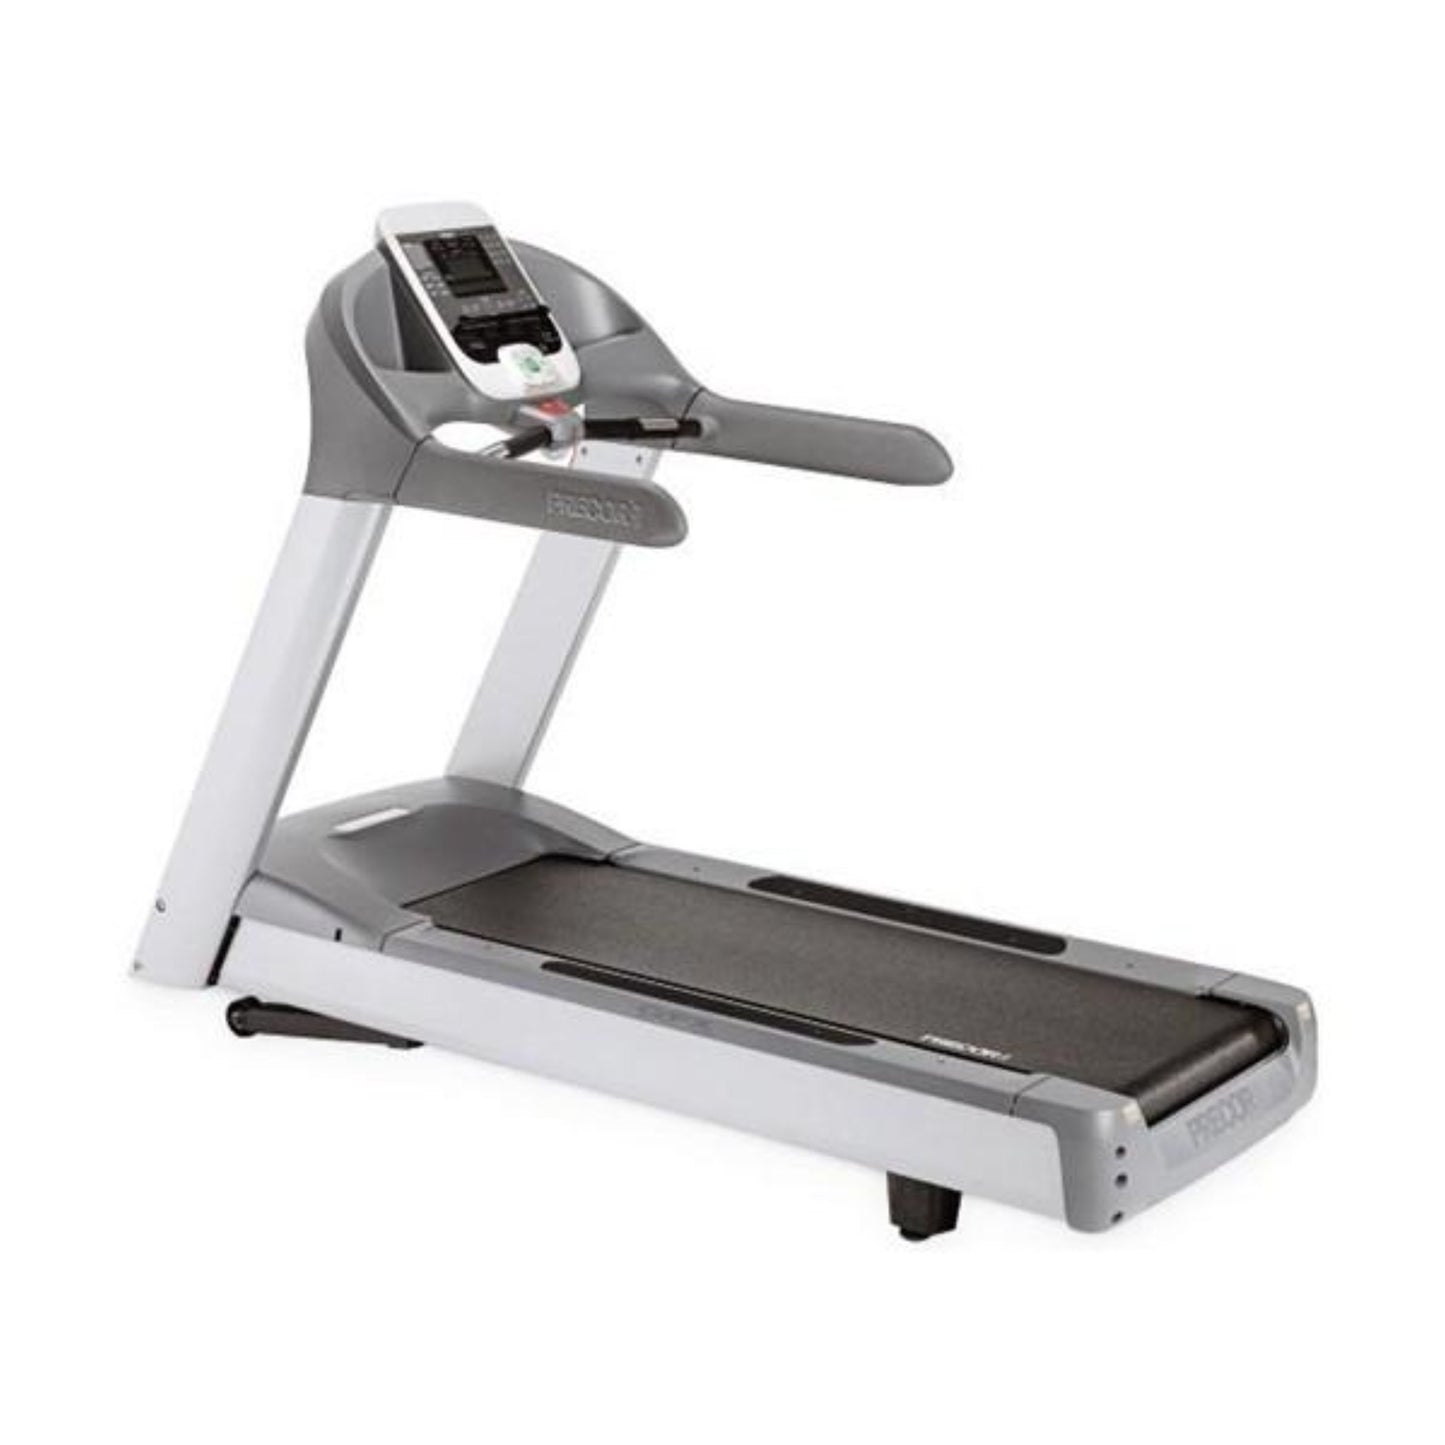 Precor C966i Experience Series Treadmill